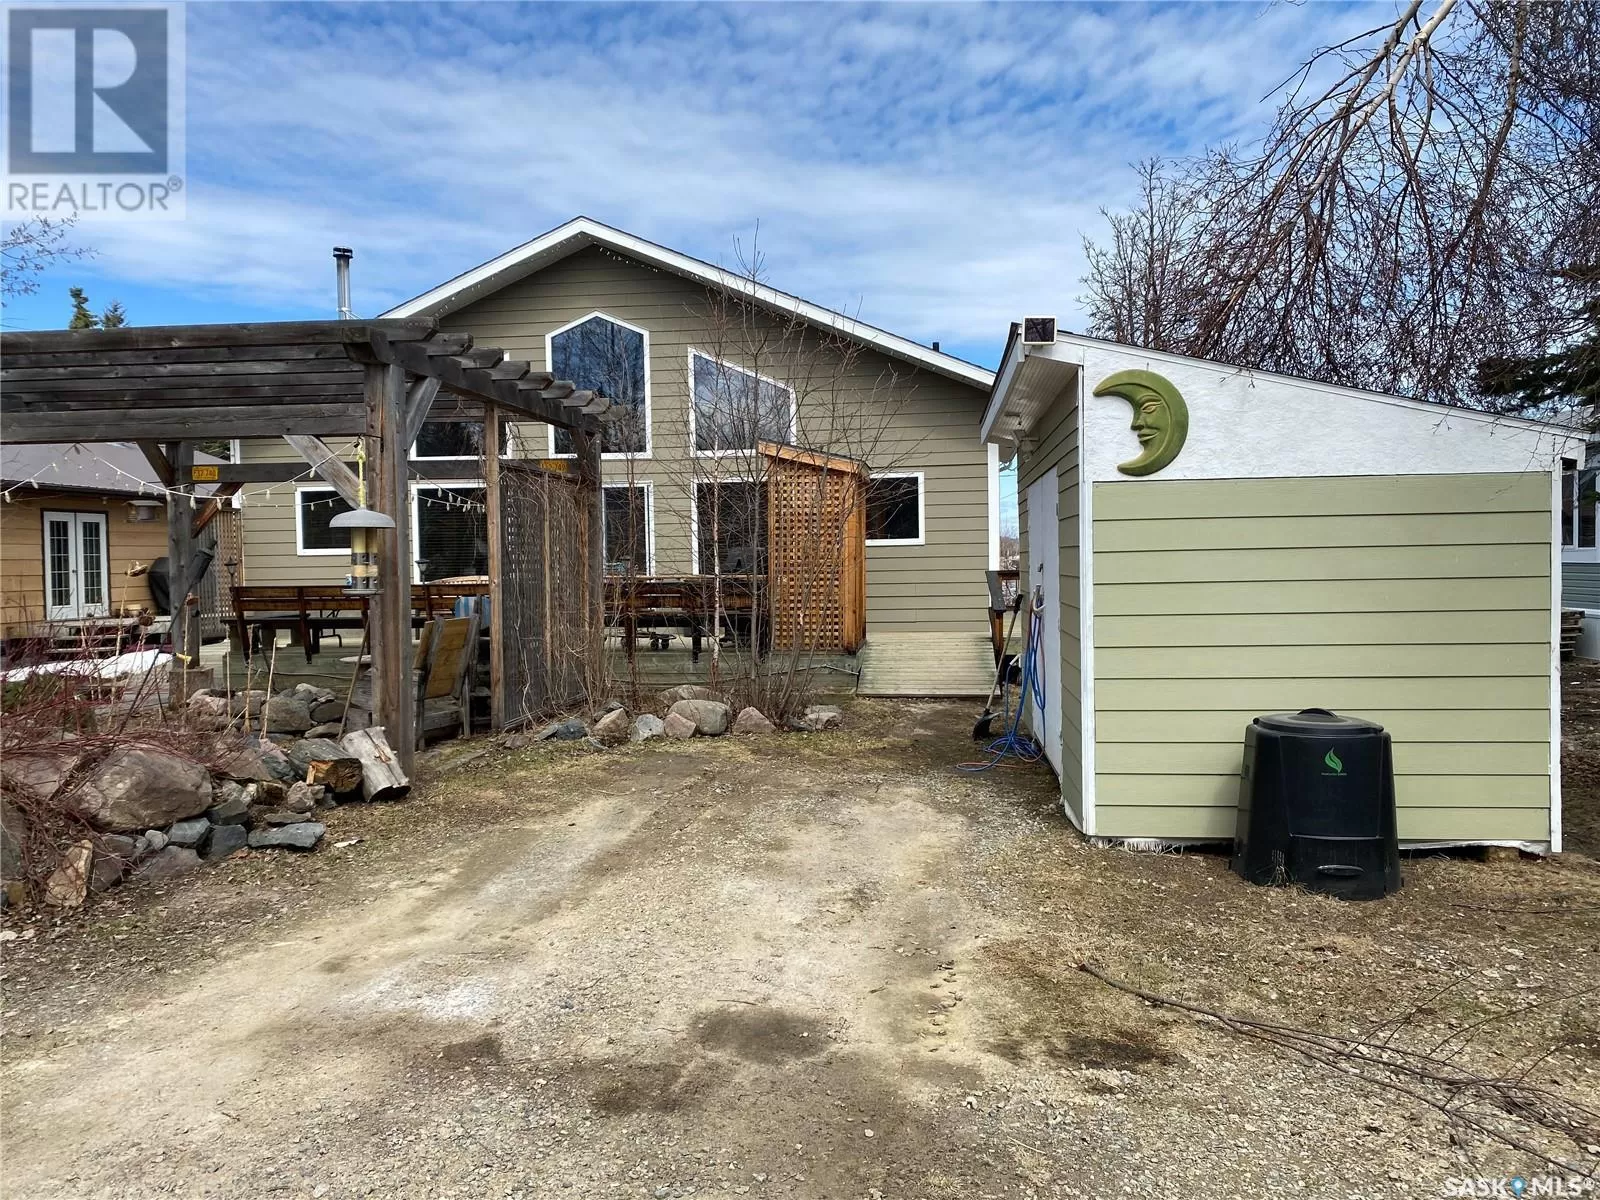 House for rent: 27 Fox Street, Missinipe, Saskatchewan S0J 1L0